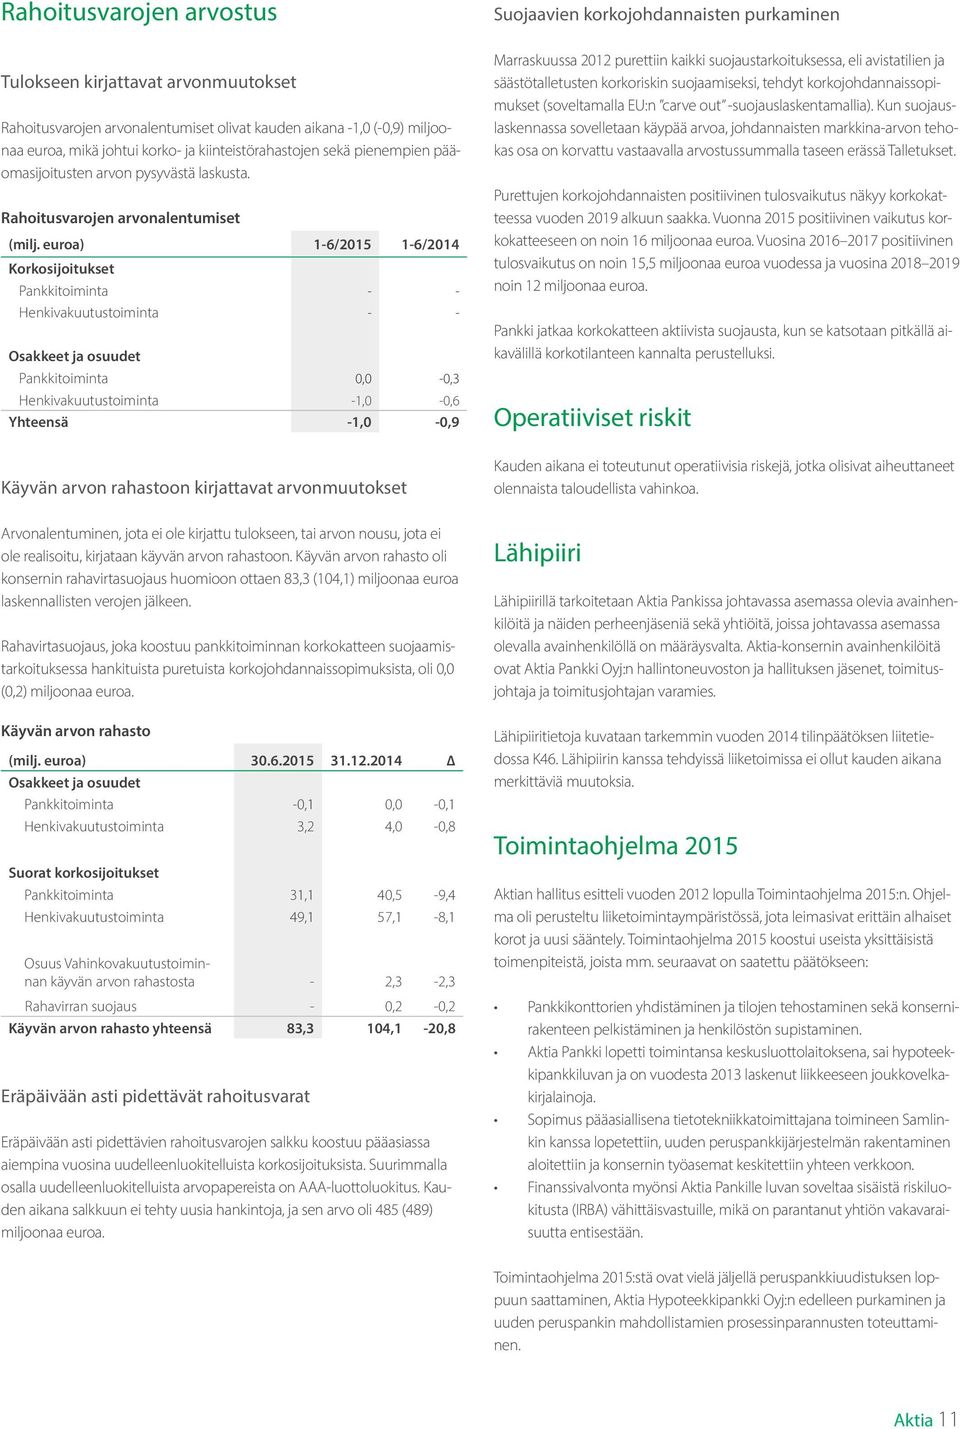 euroa) 1-6/2015 1-6/2014 Korkosijoitukset Pankkitoiminta - - Henkivakuutustoiminta - - Osakkeet ja osuudet Pankkitoiminta 0,0-0,3 Henkivakuutustoiminta -1,0-0,6 Yhteensä -1,0-0,9 Käyvän arvon